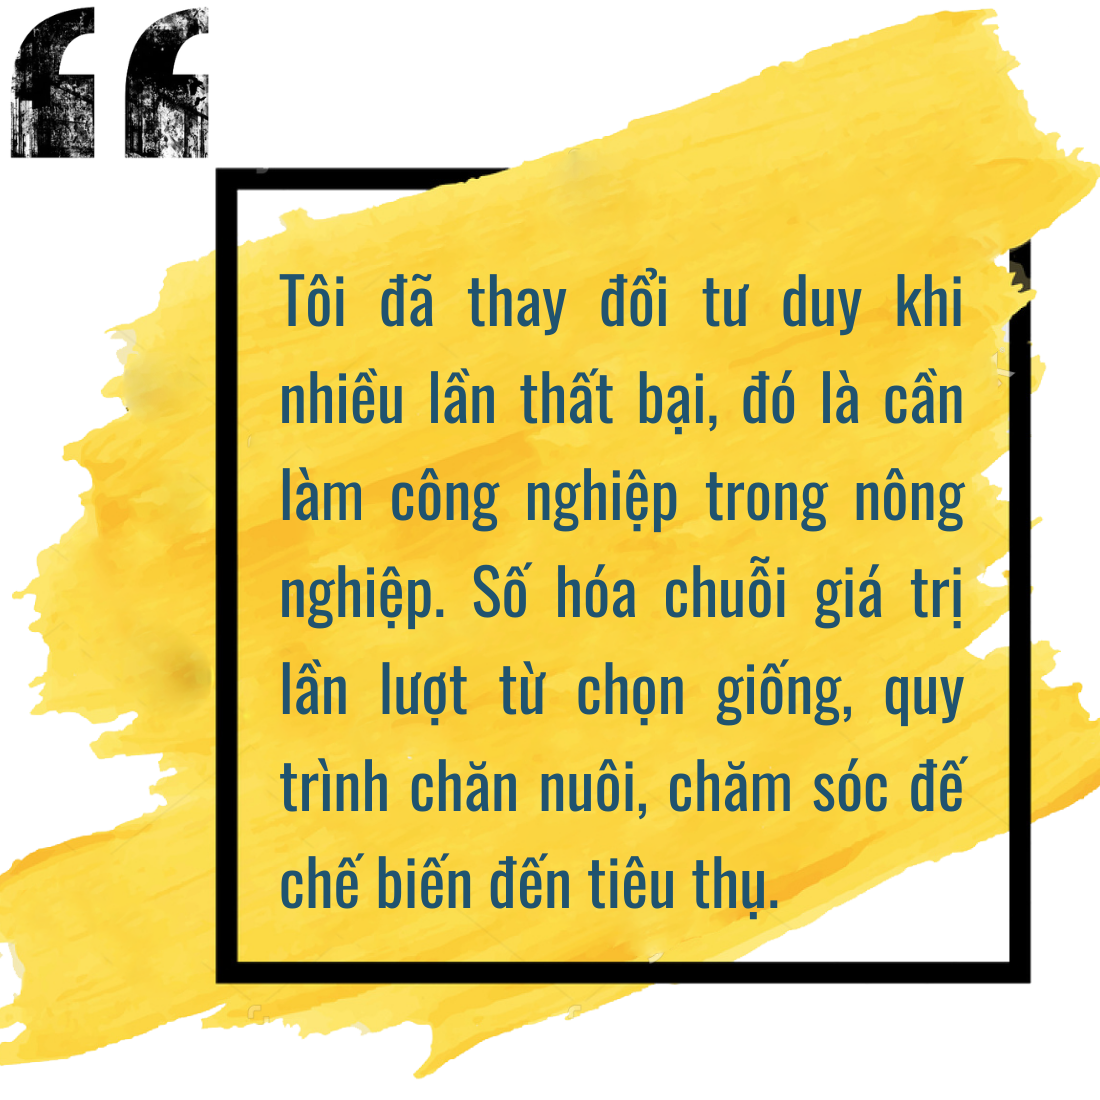 Nông dân Nguyễn Đăng Cường: 